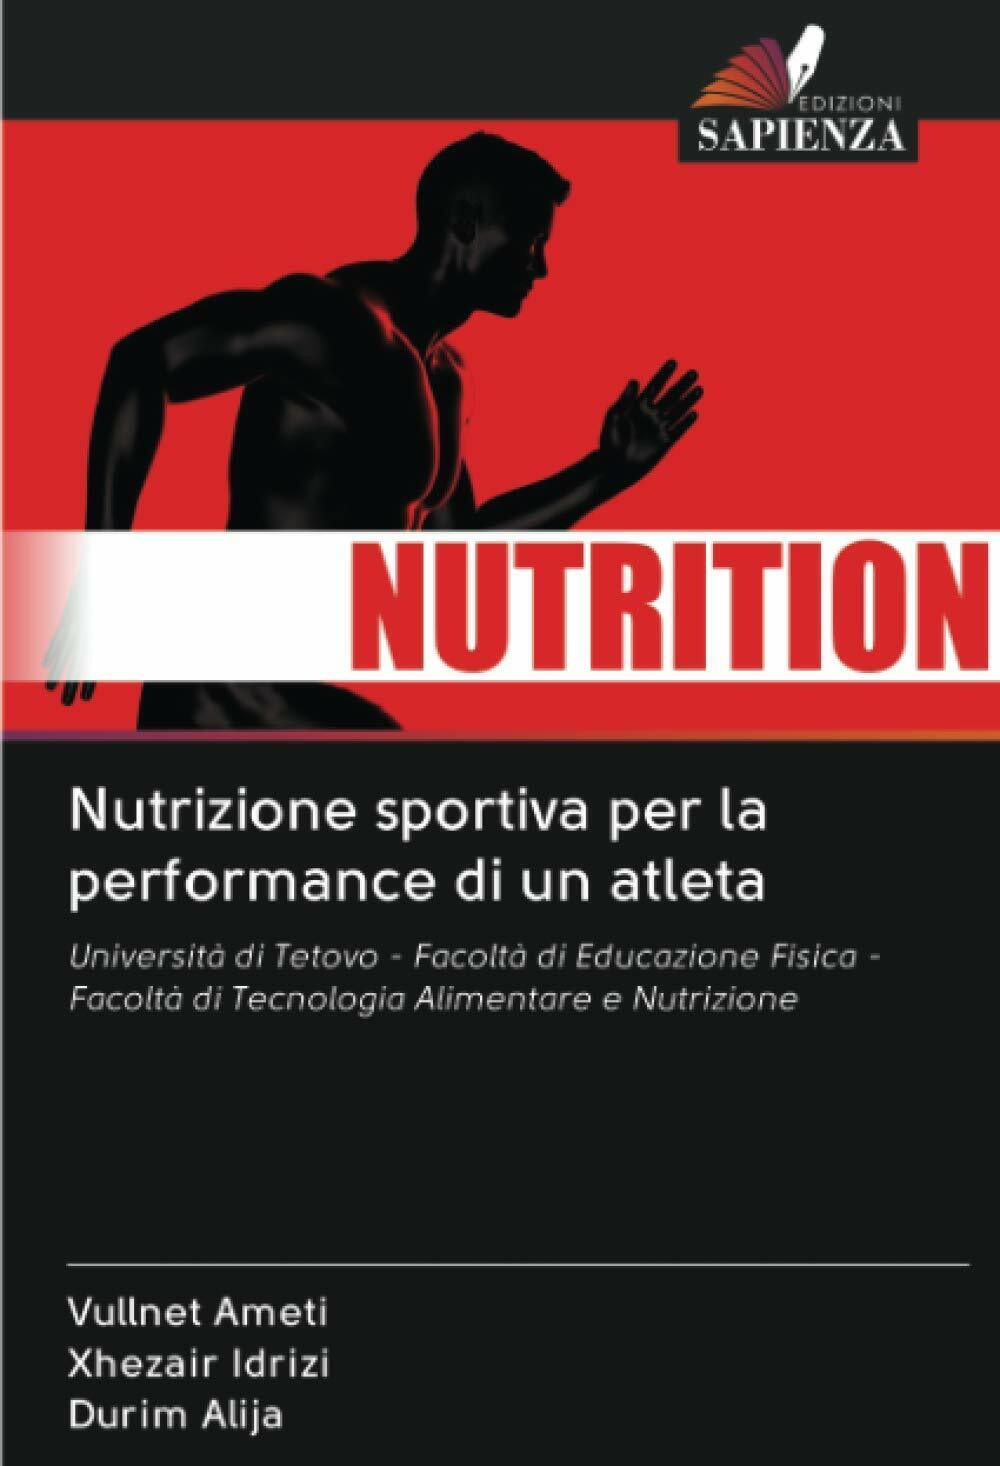 Nutrizione sportiva per la performance di un atleta - edizioni sapienza,2021